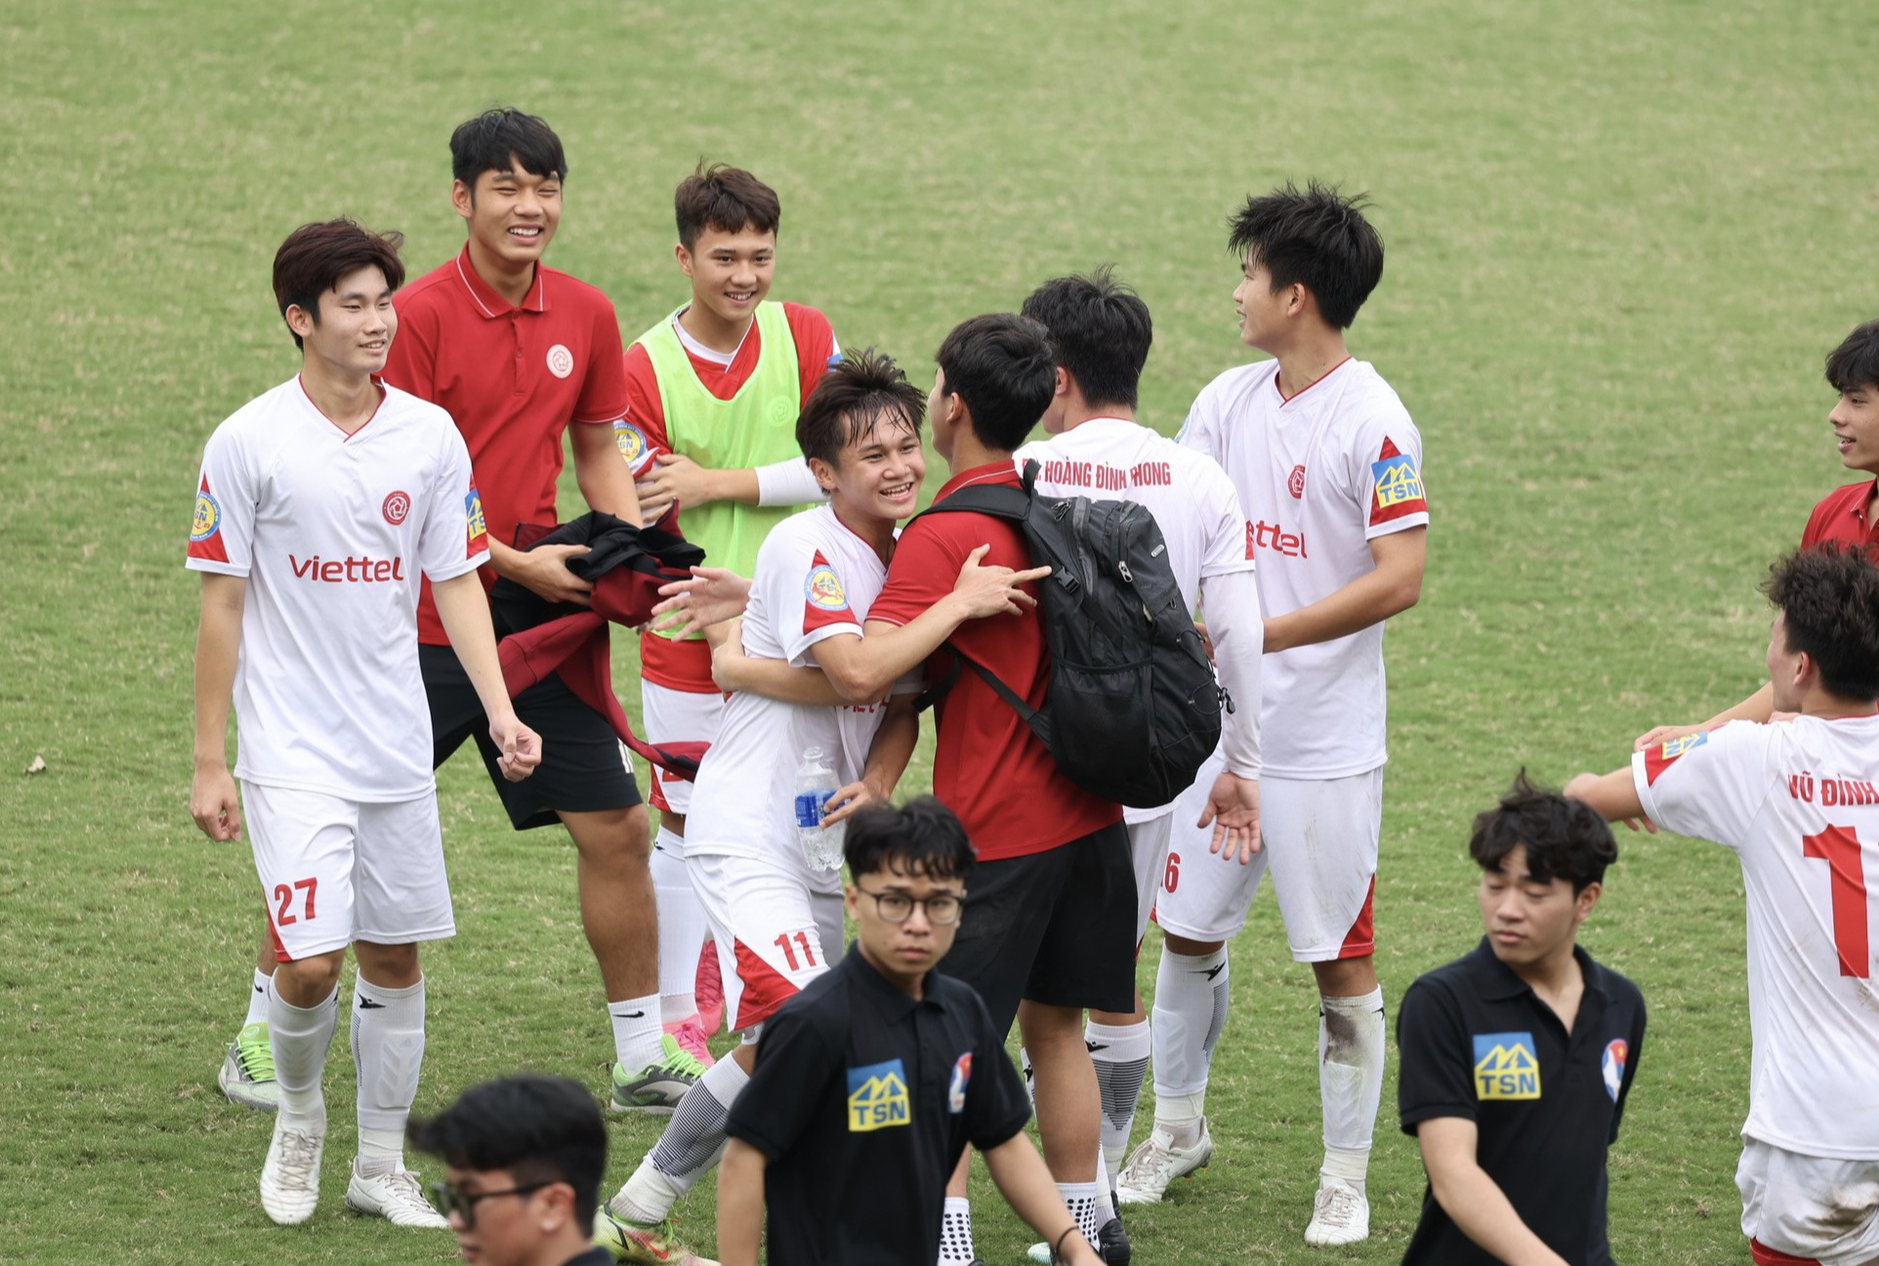 Đánh bại Hồng Lĩnh Hà Tĩnh, U17 Viettel vô địch giải trẻ quốc gia - Ảnh 4.